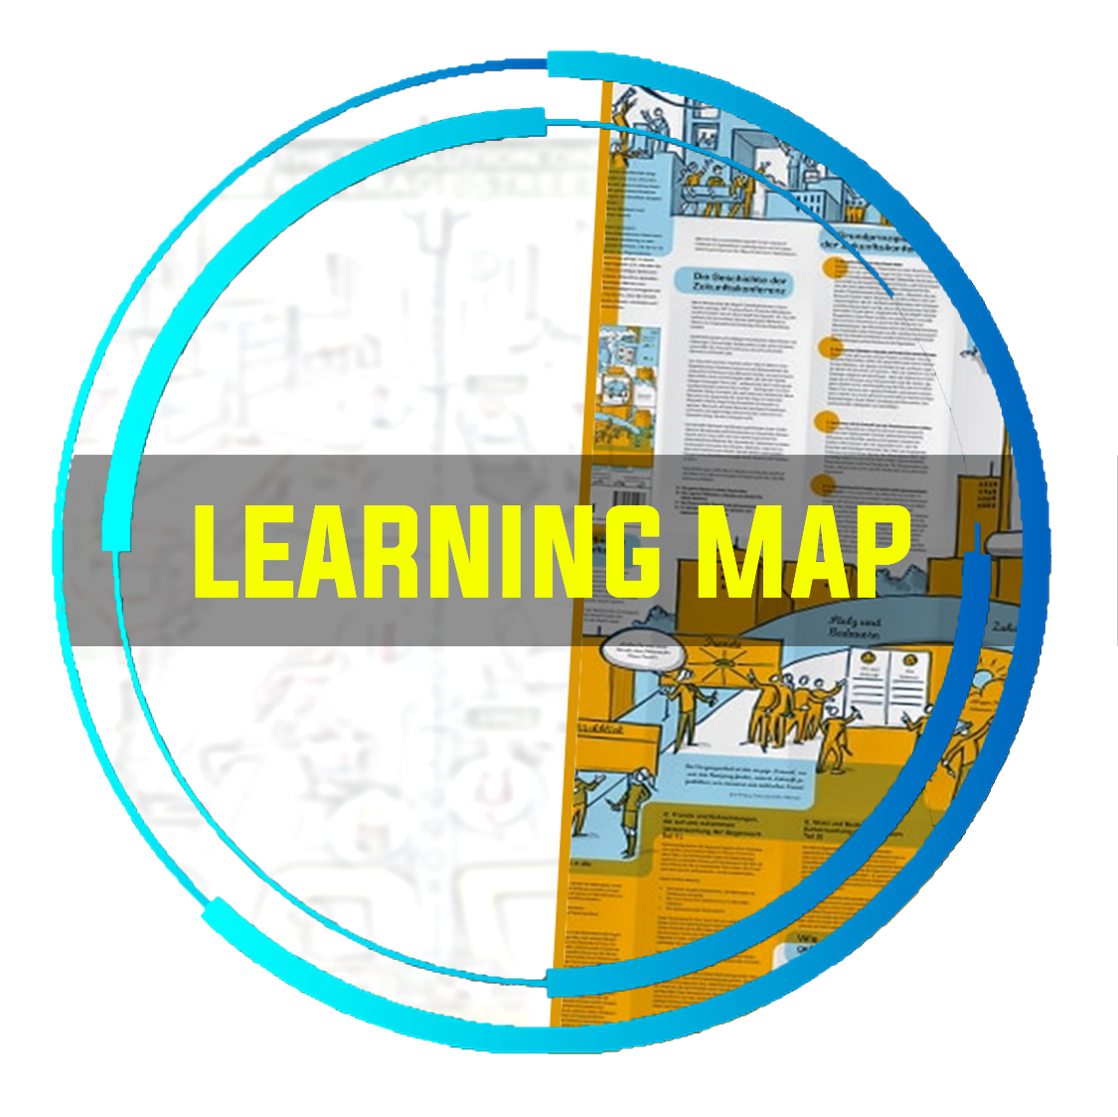 Cuca Mundi Treinamento Experencial Recursos Humanos Gestão De Pessoas Treinamento Corporativos São Paulo–Learning Map